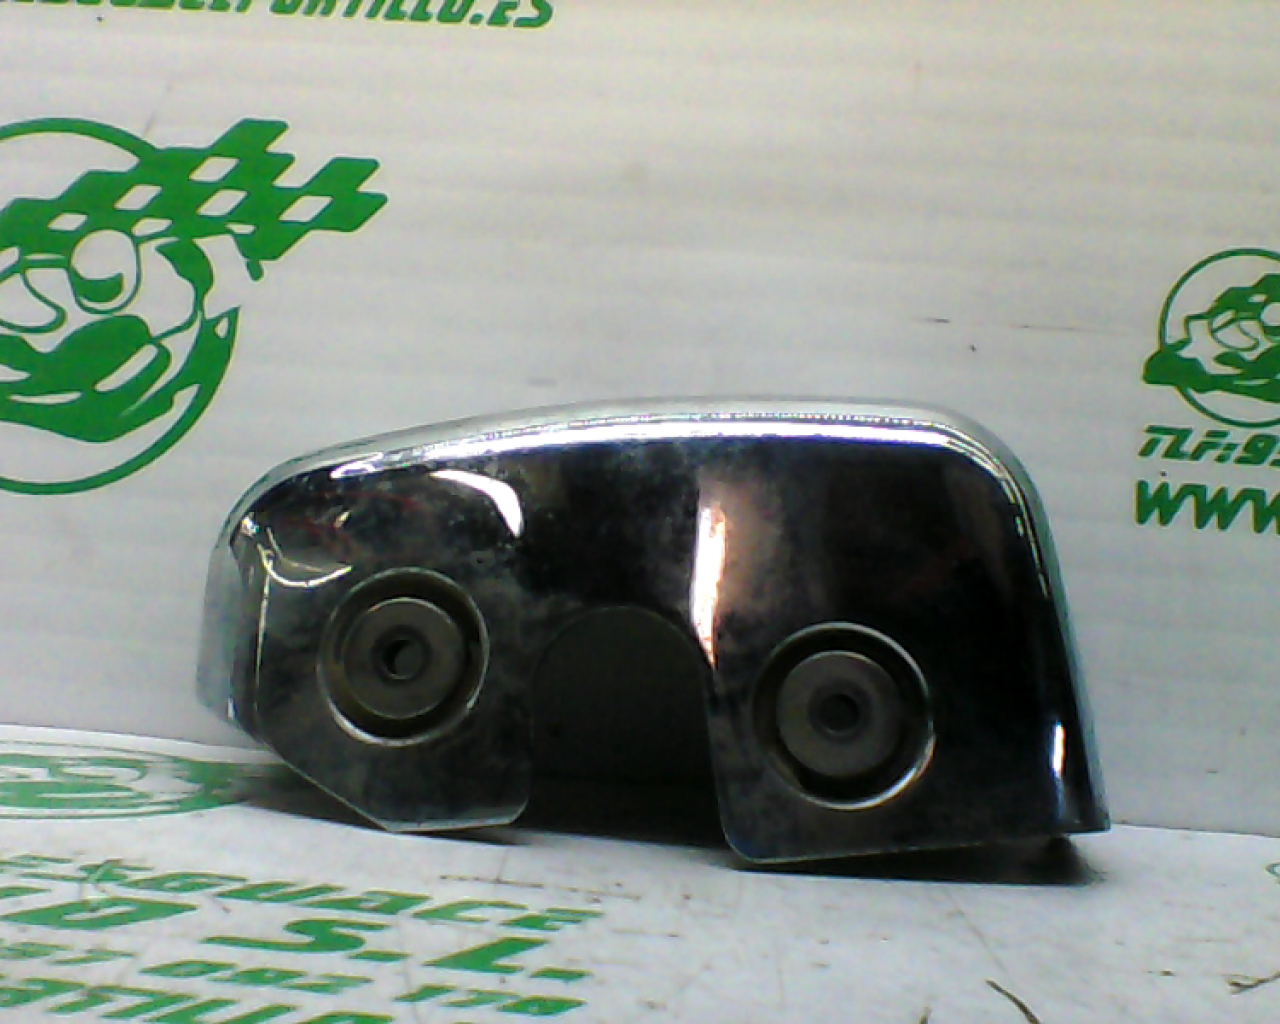 Embellecedor cilindro derecho Suzuki Intruder 250 (2006-2007)